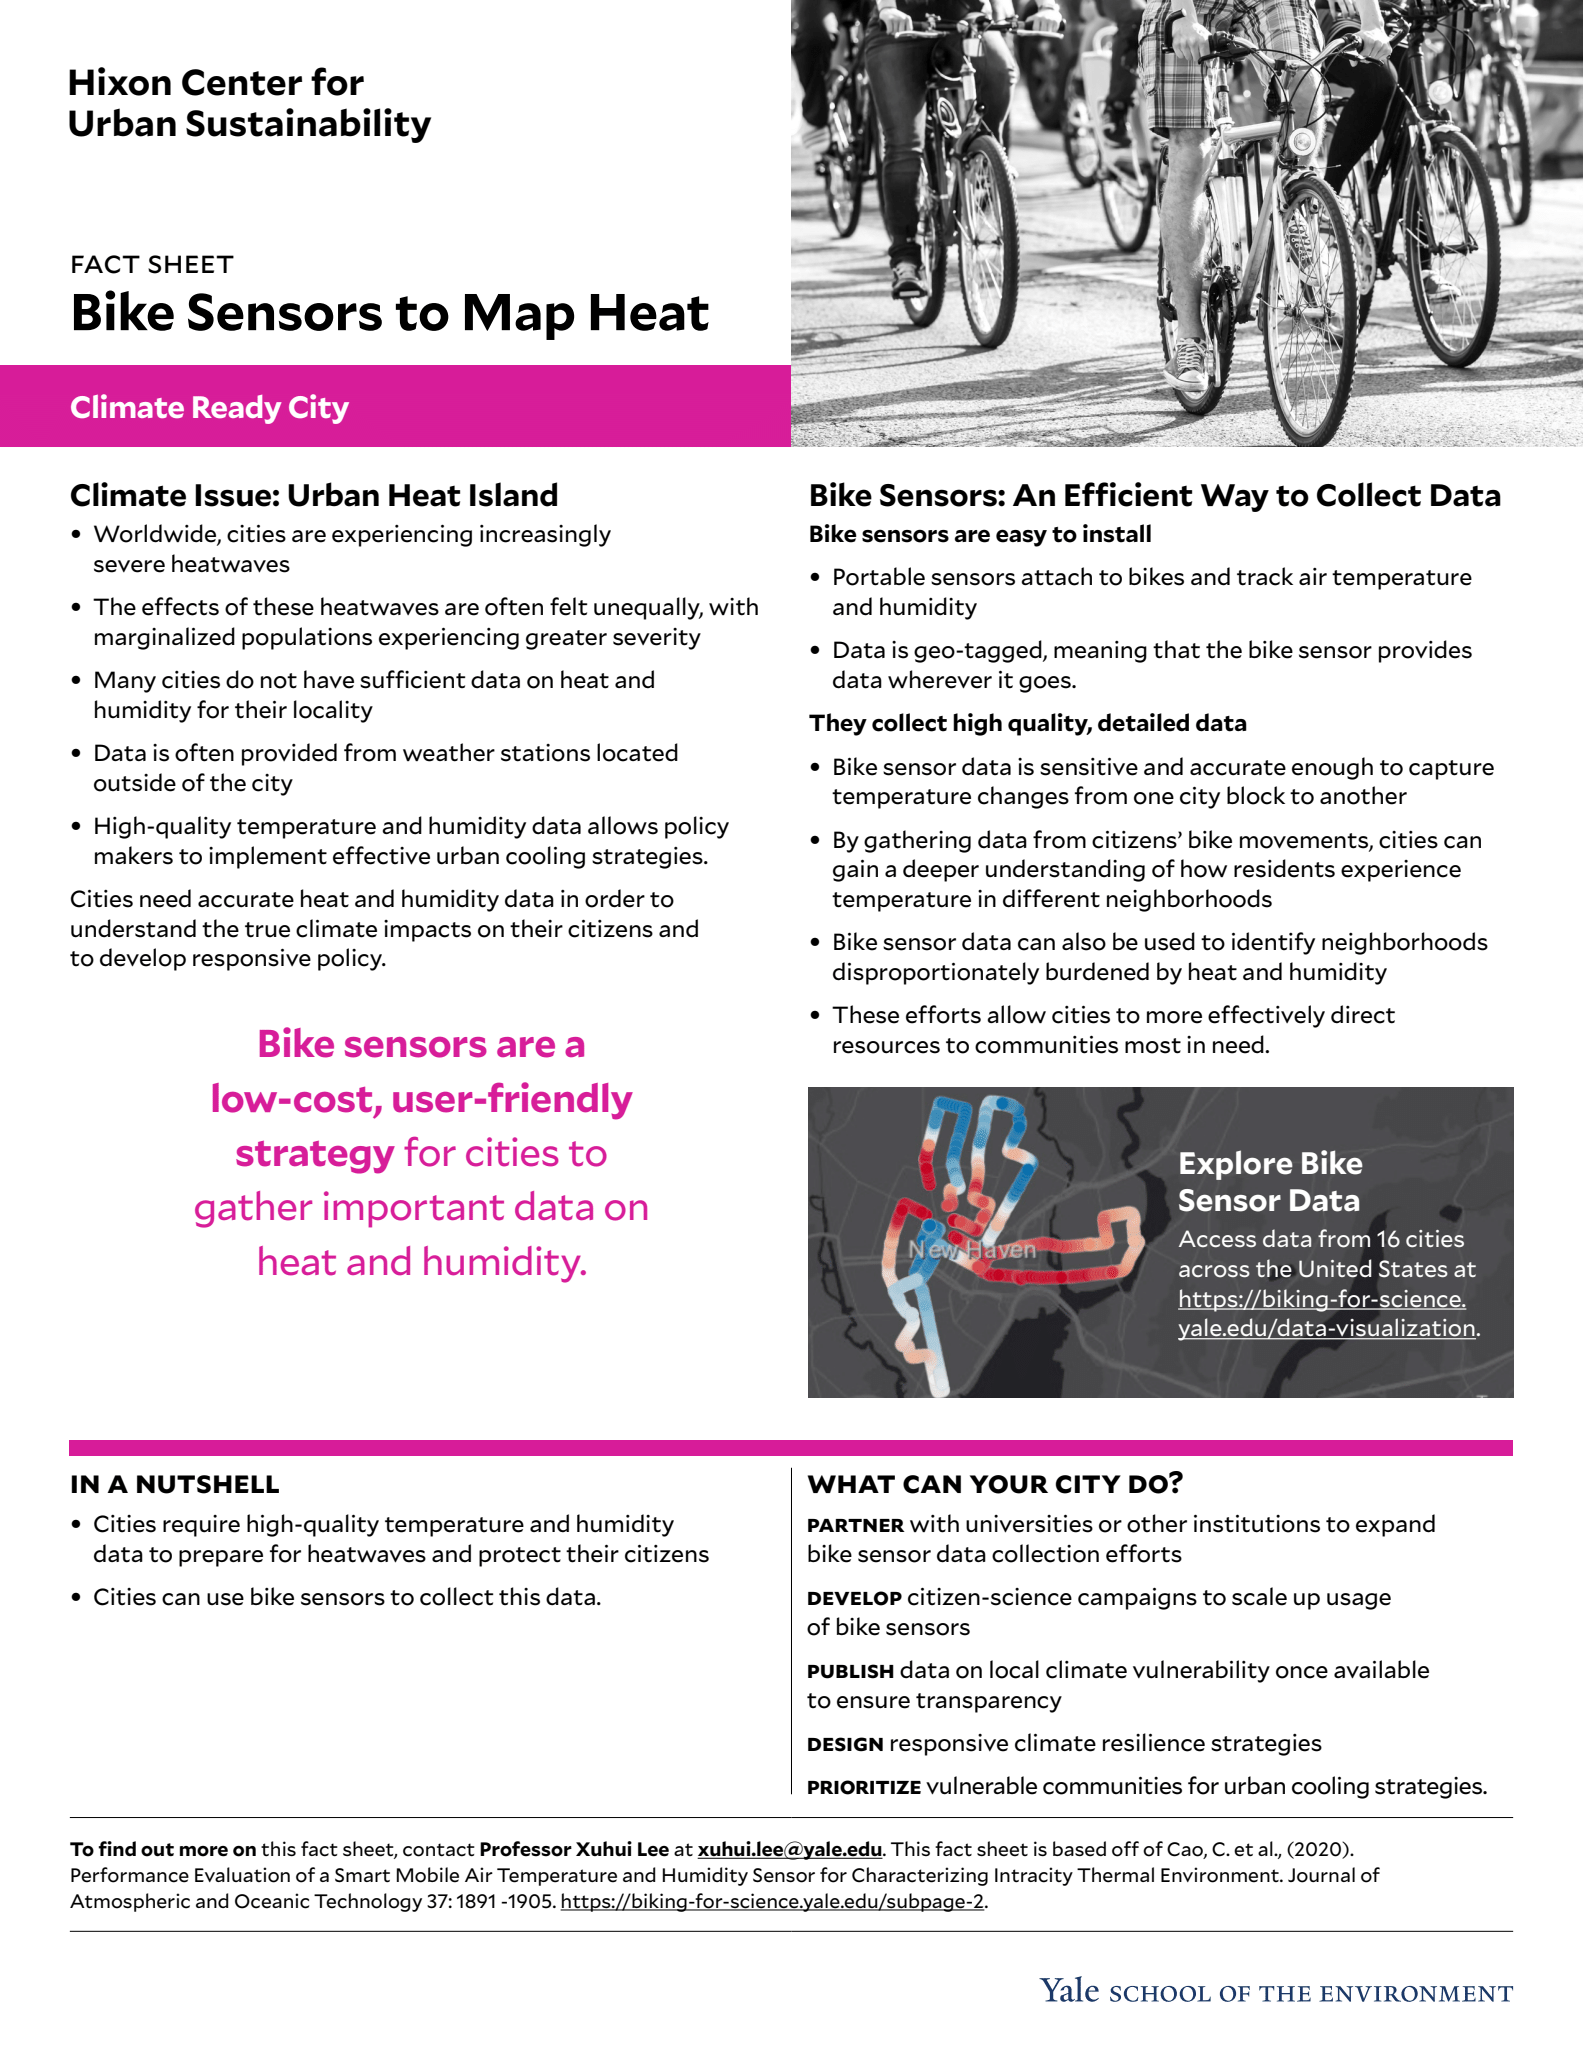 Fact sheet for bike sensor to map heat fact sheet